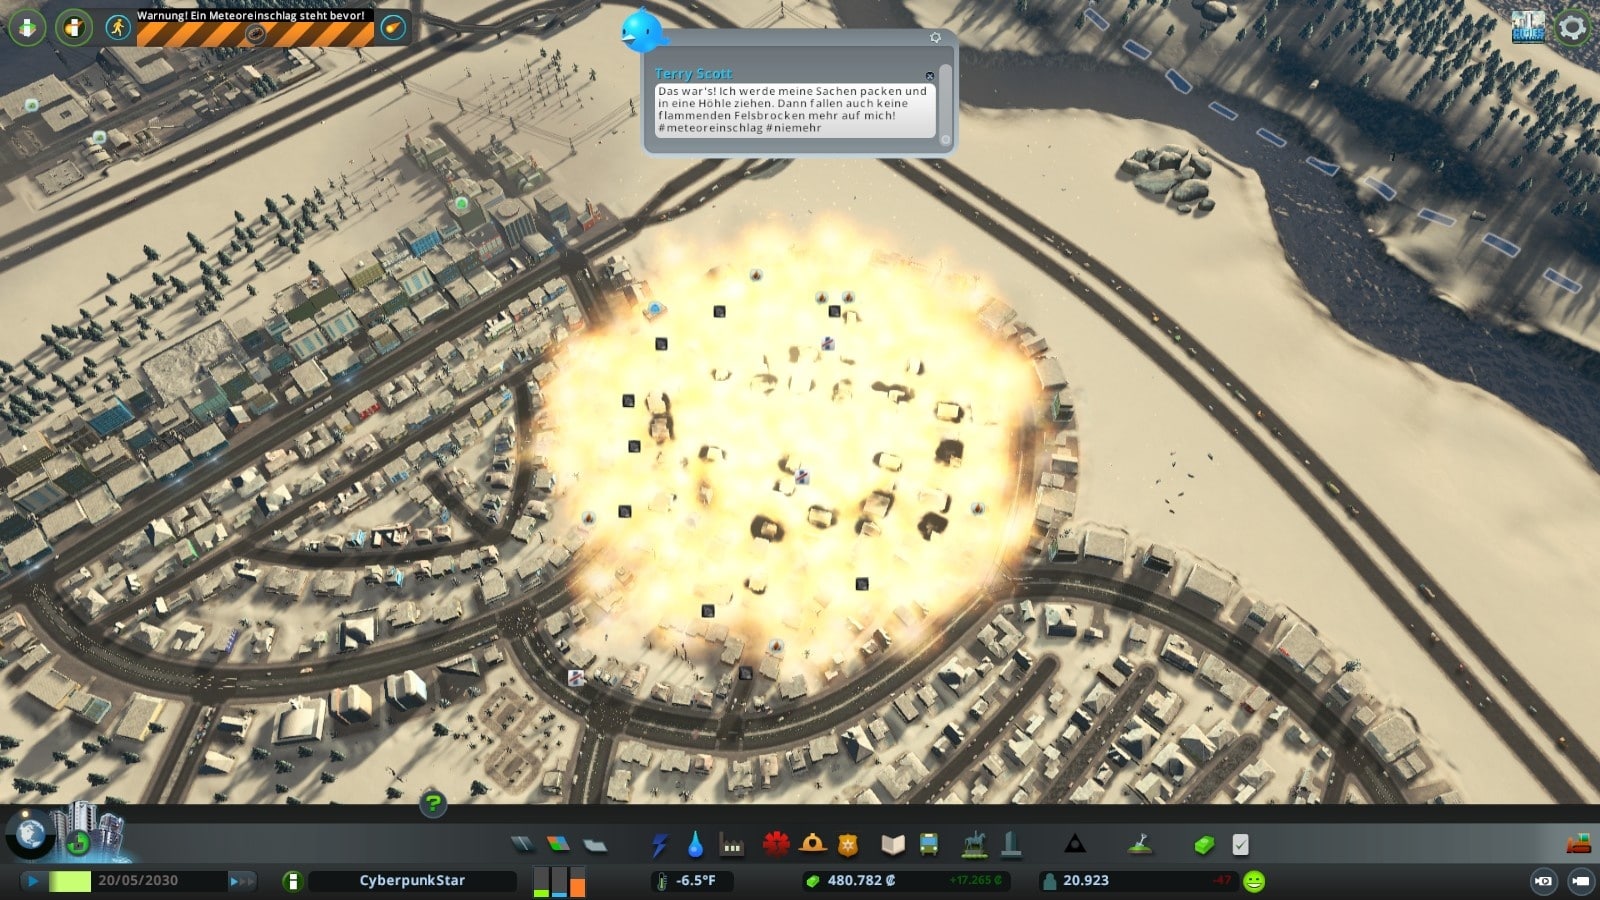 Onze burgers klagen over de catastrofale meteoriet.